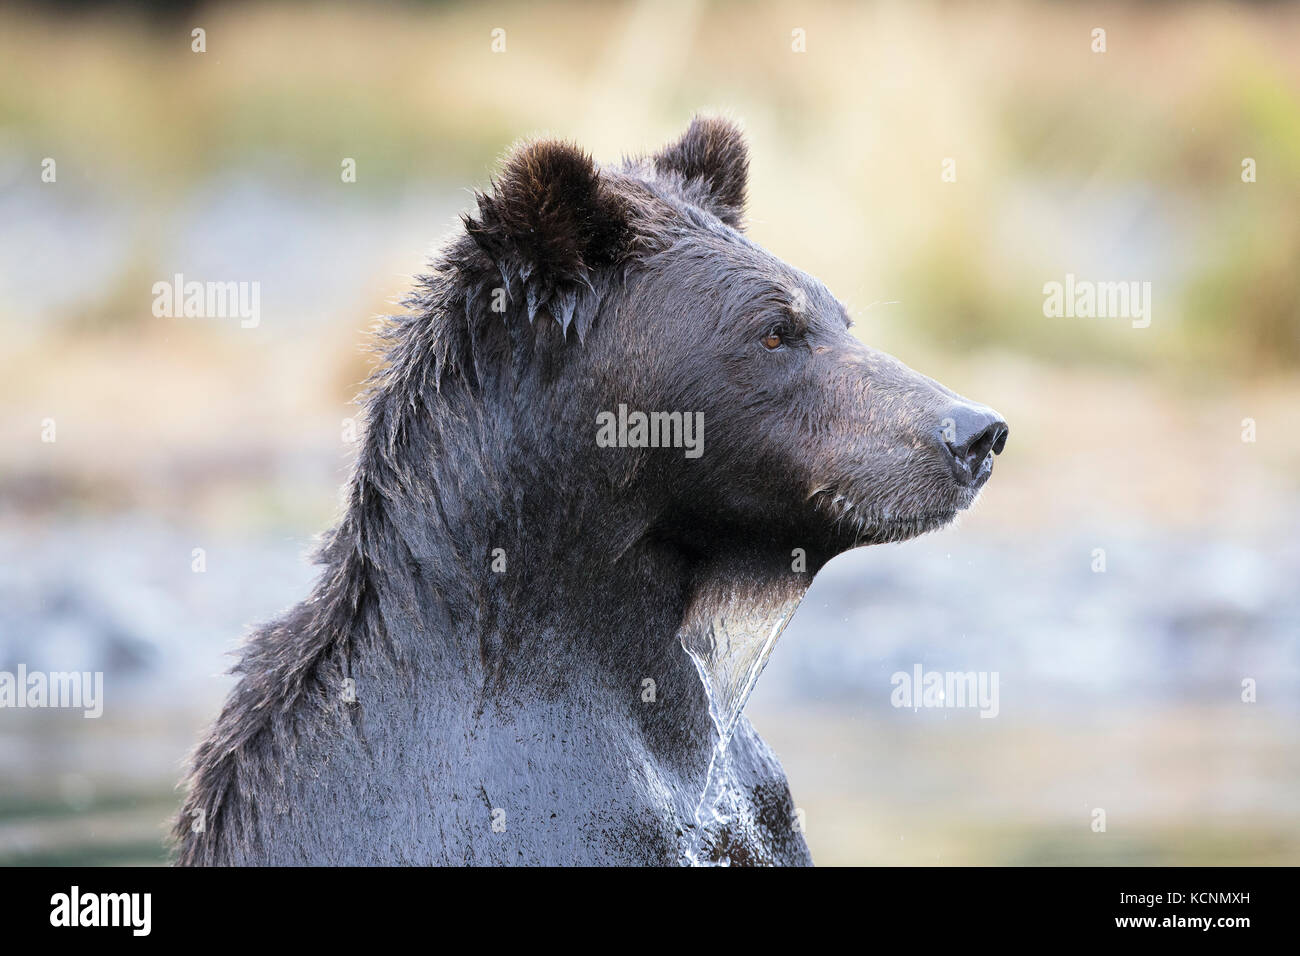 Grizzlybär (Ursus arctos Horribilis), weiblich, Chilcotin Region, British Columbia, Kanada. Stockfoto